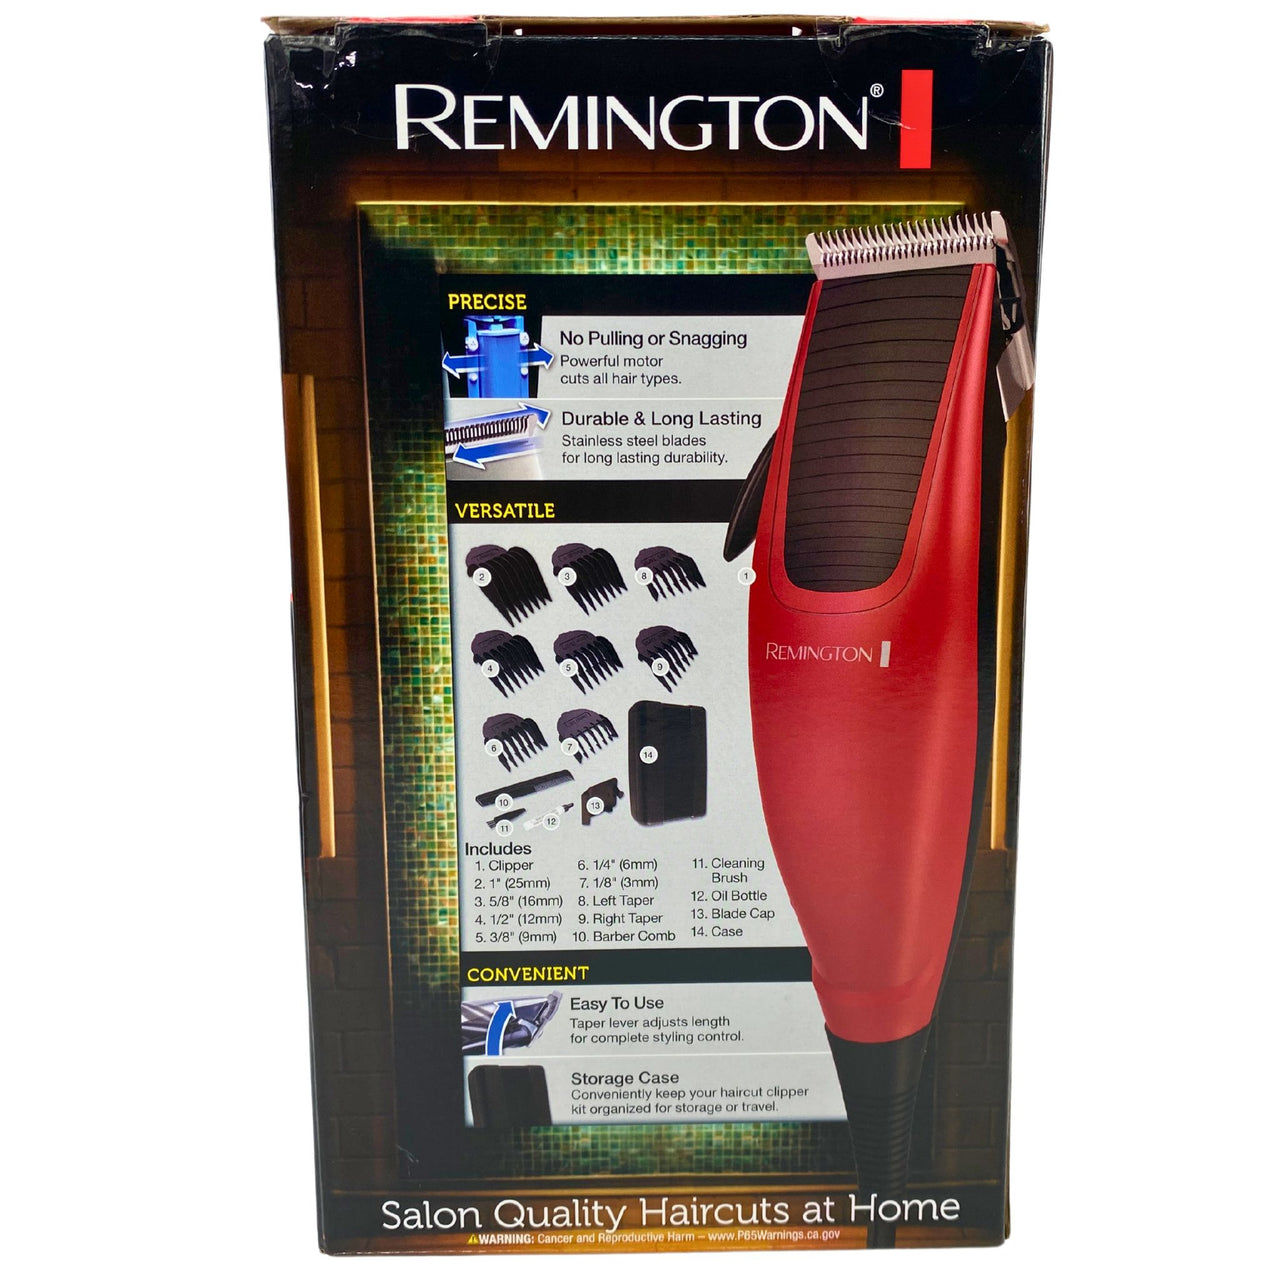 Remington Home Stylist Haircut Kit 14 piece Kit